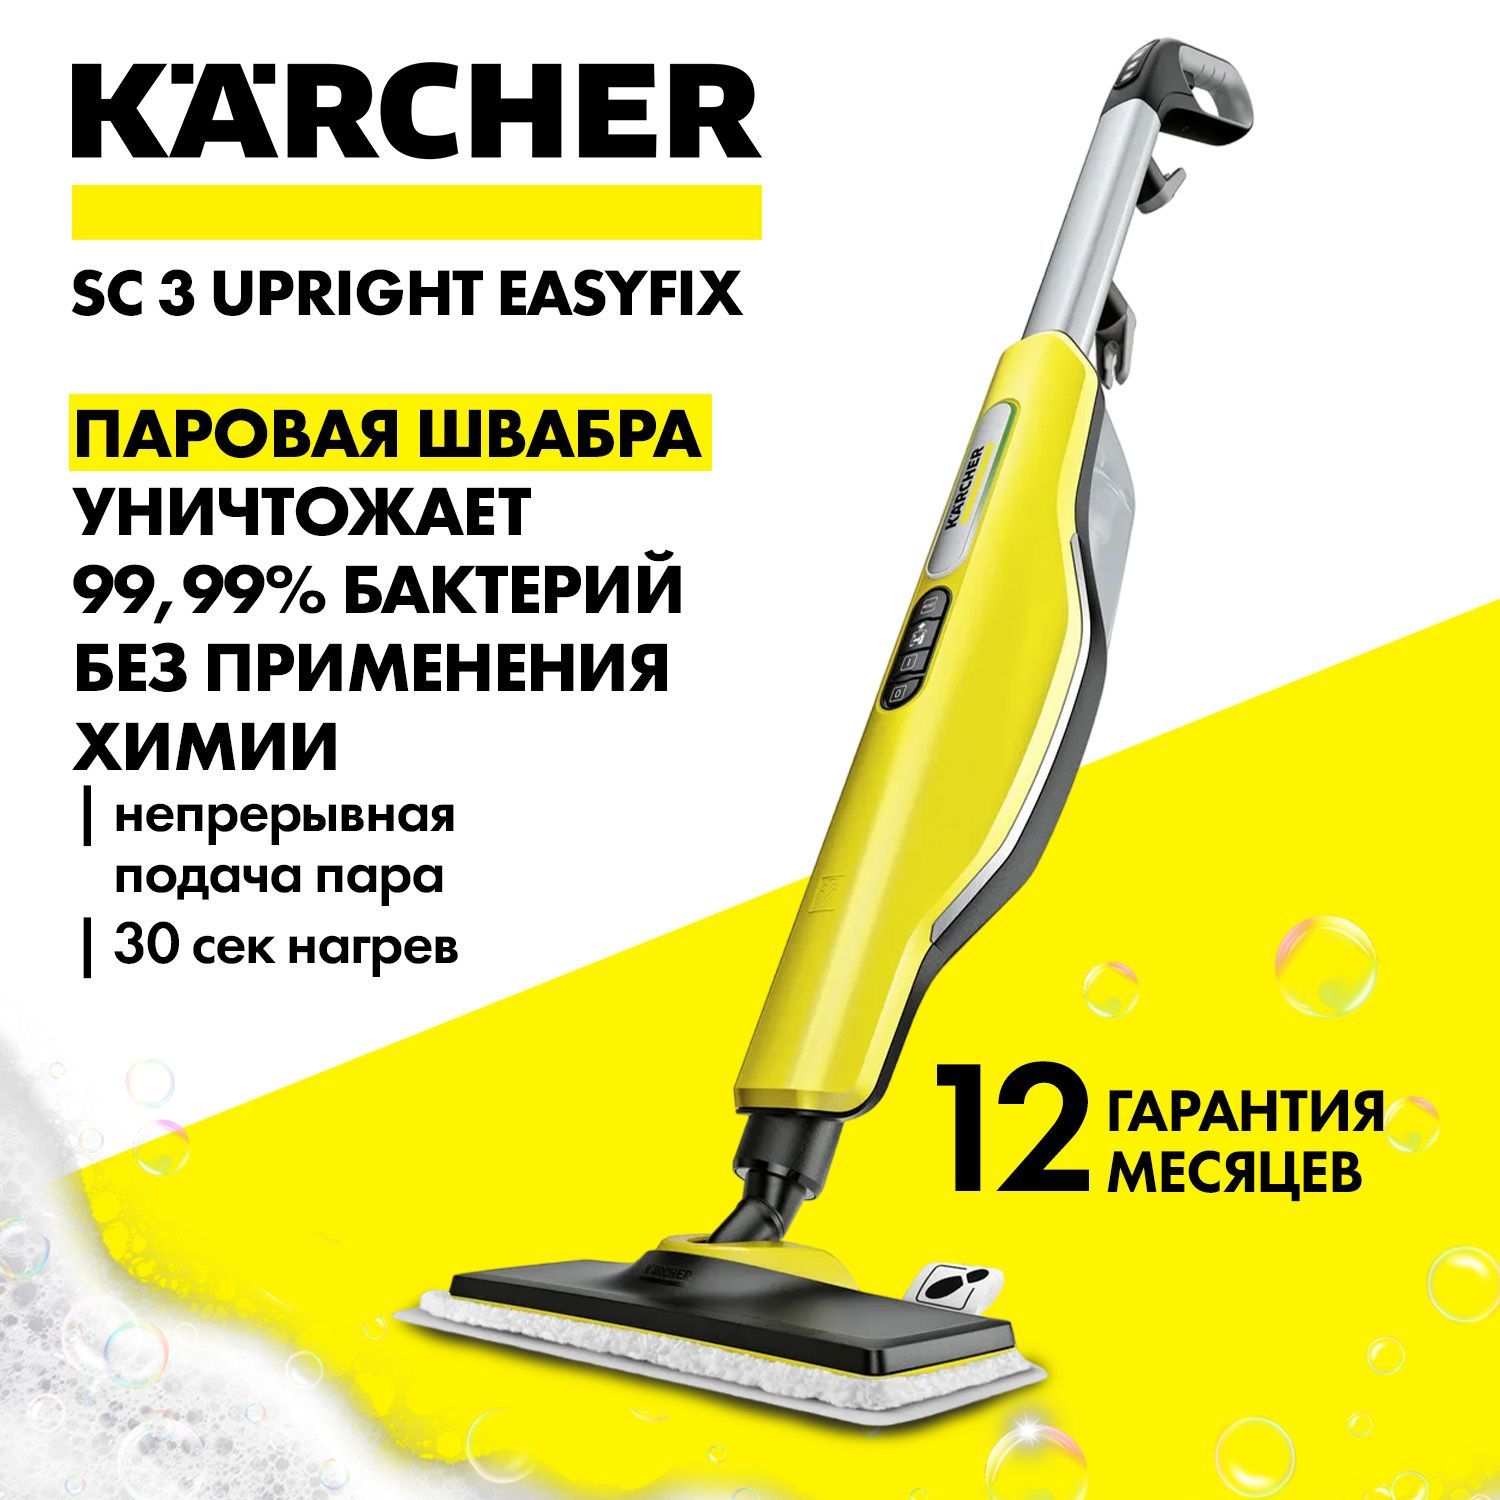 Karcher sc3 easyfix